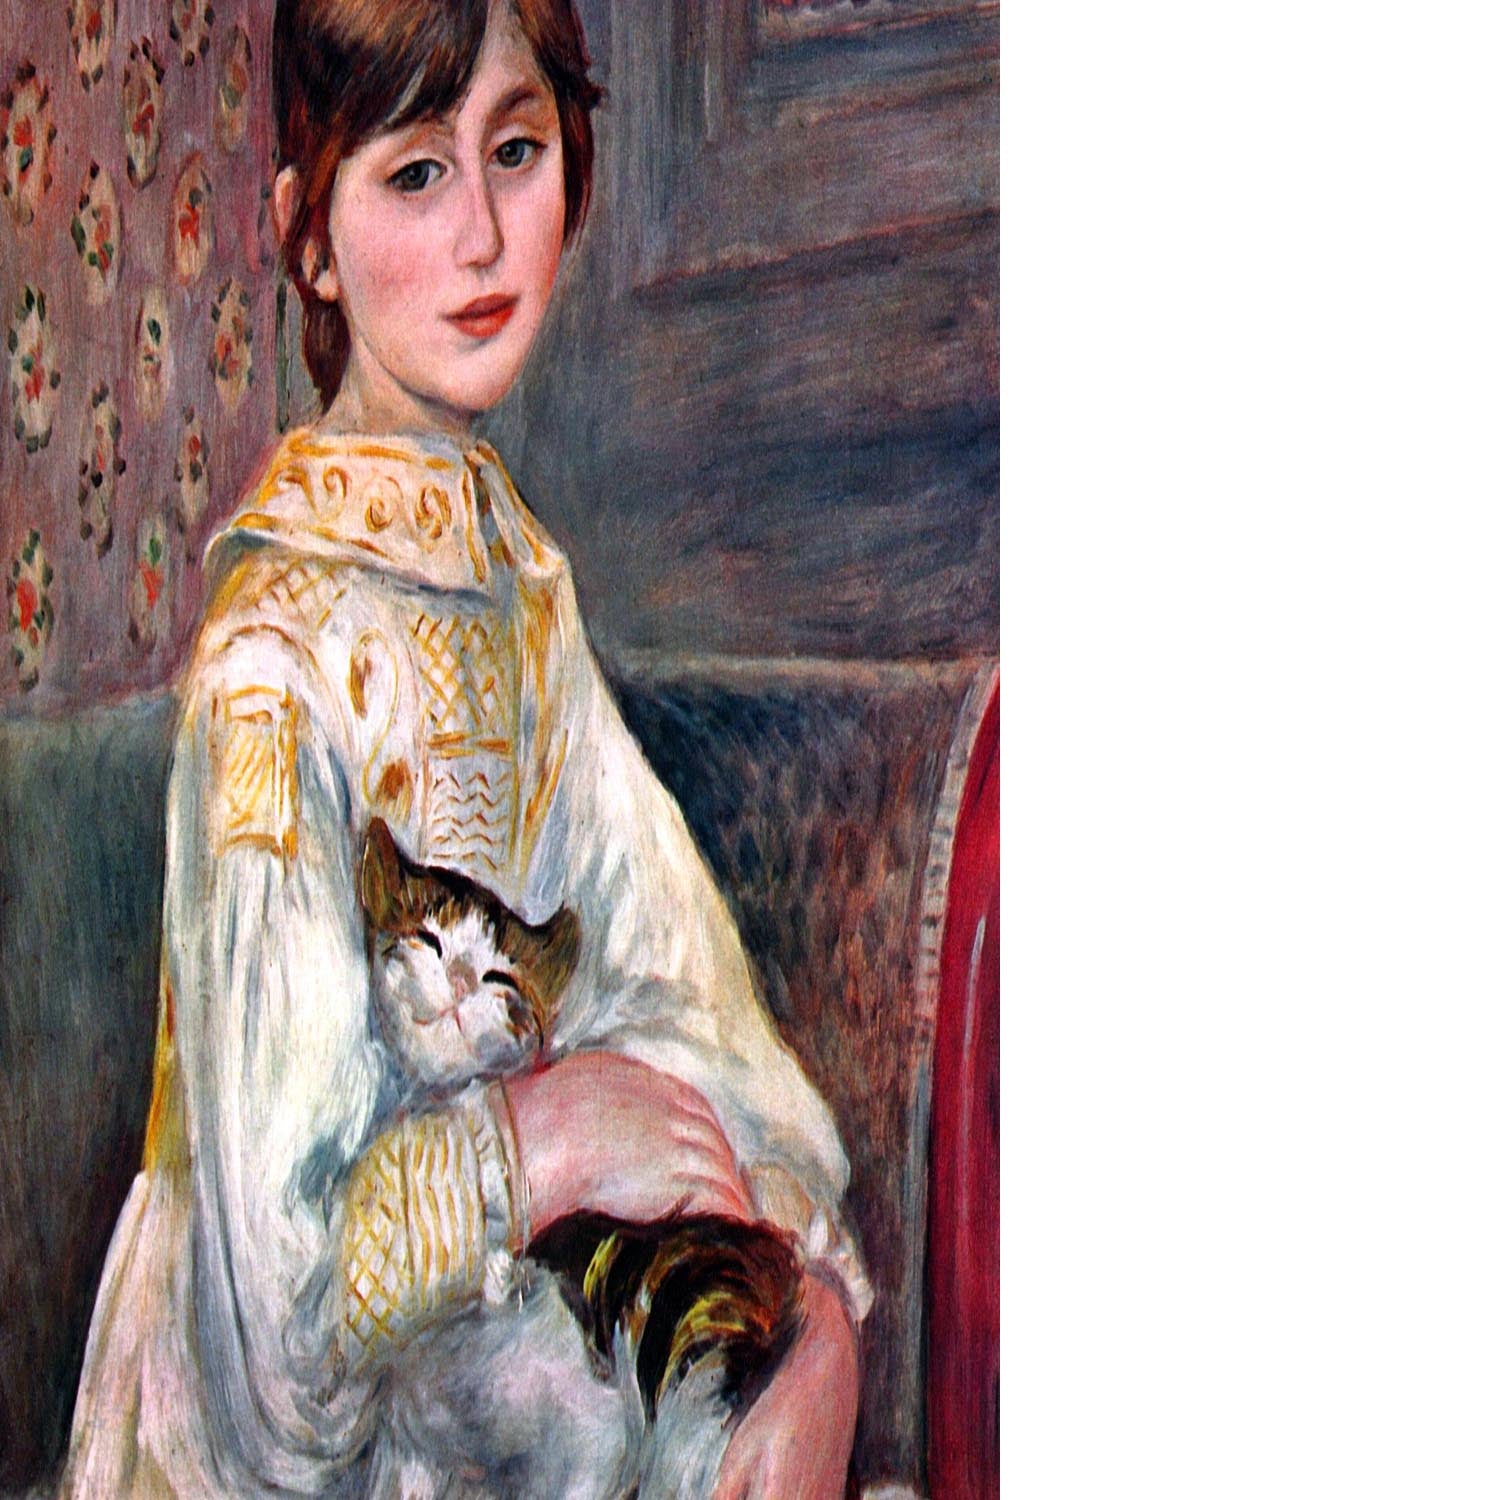 Portrait of Mademoiselle Julie Manet by Renoir Floating Framed Canvas